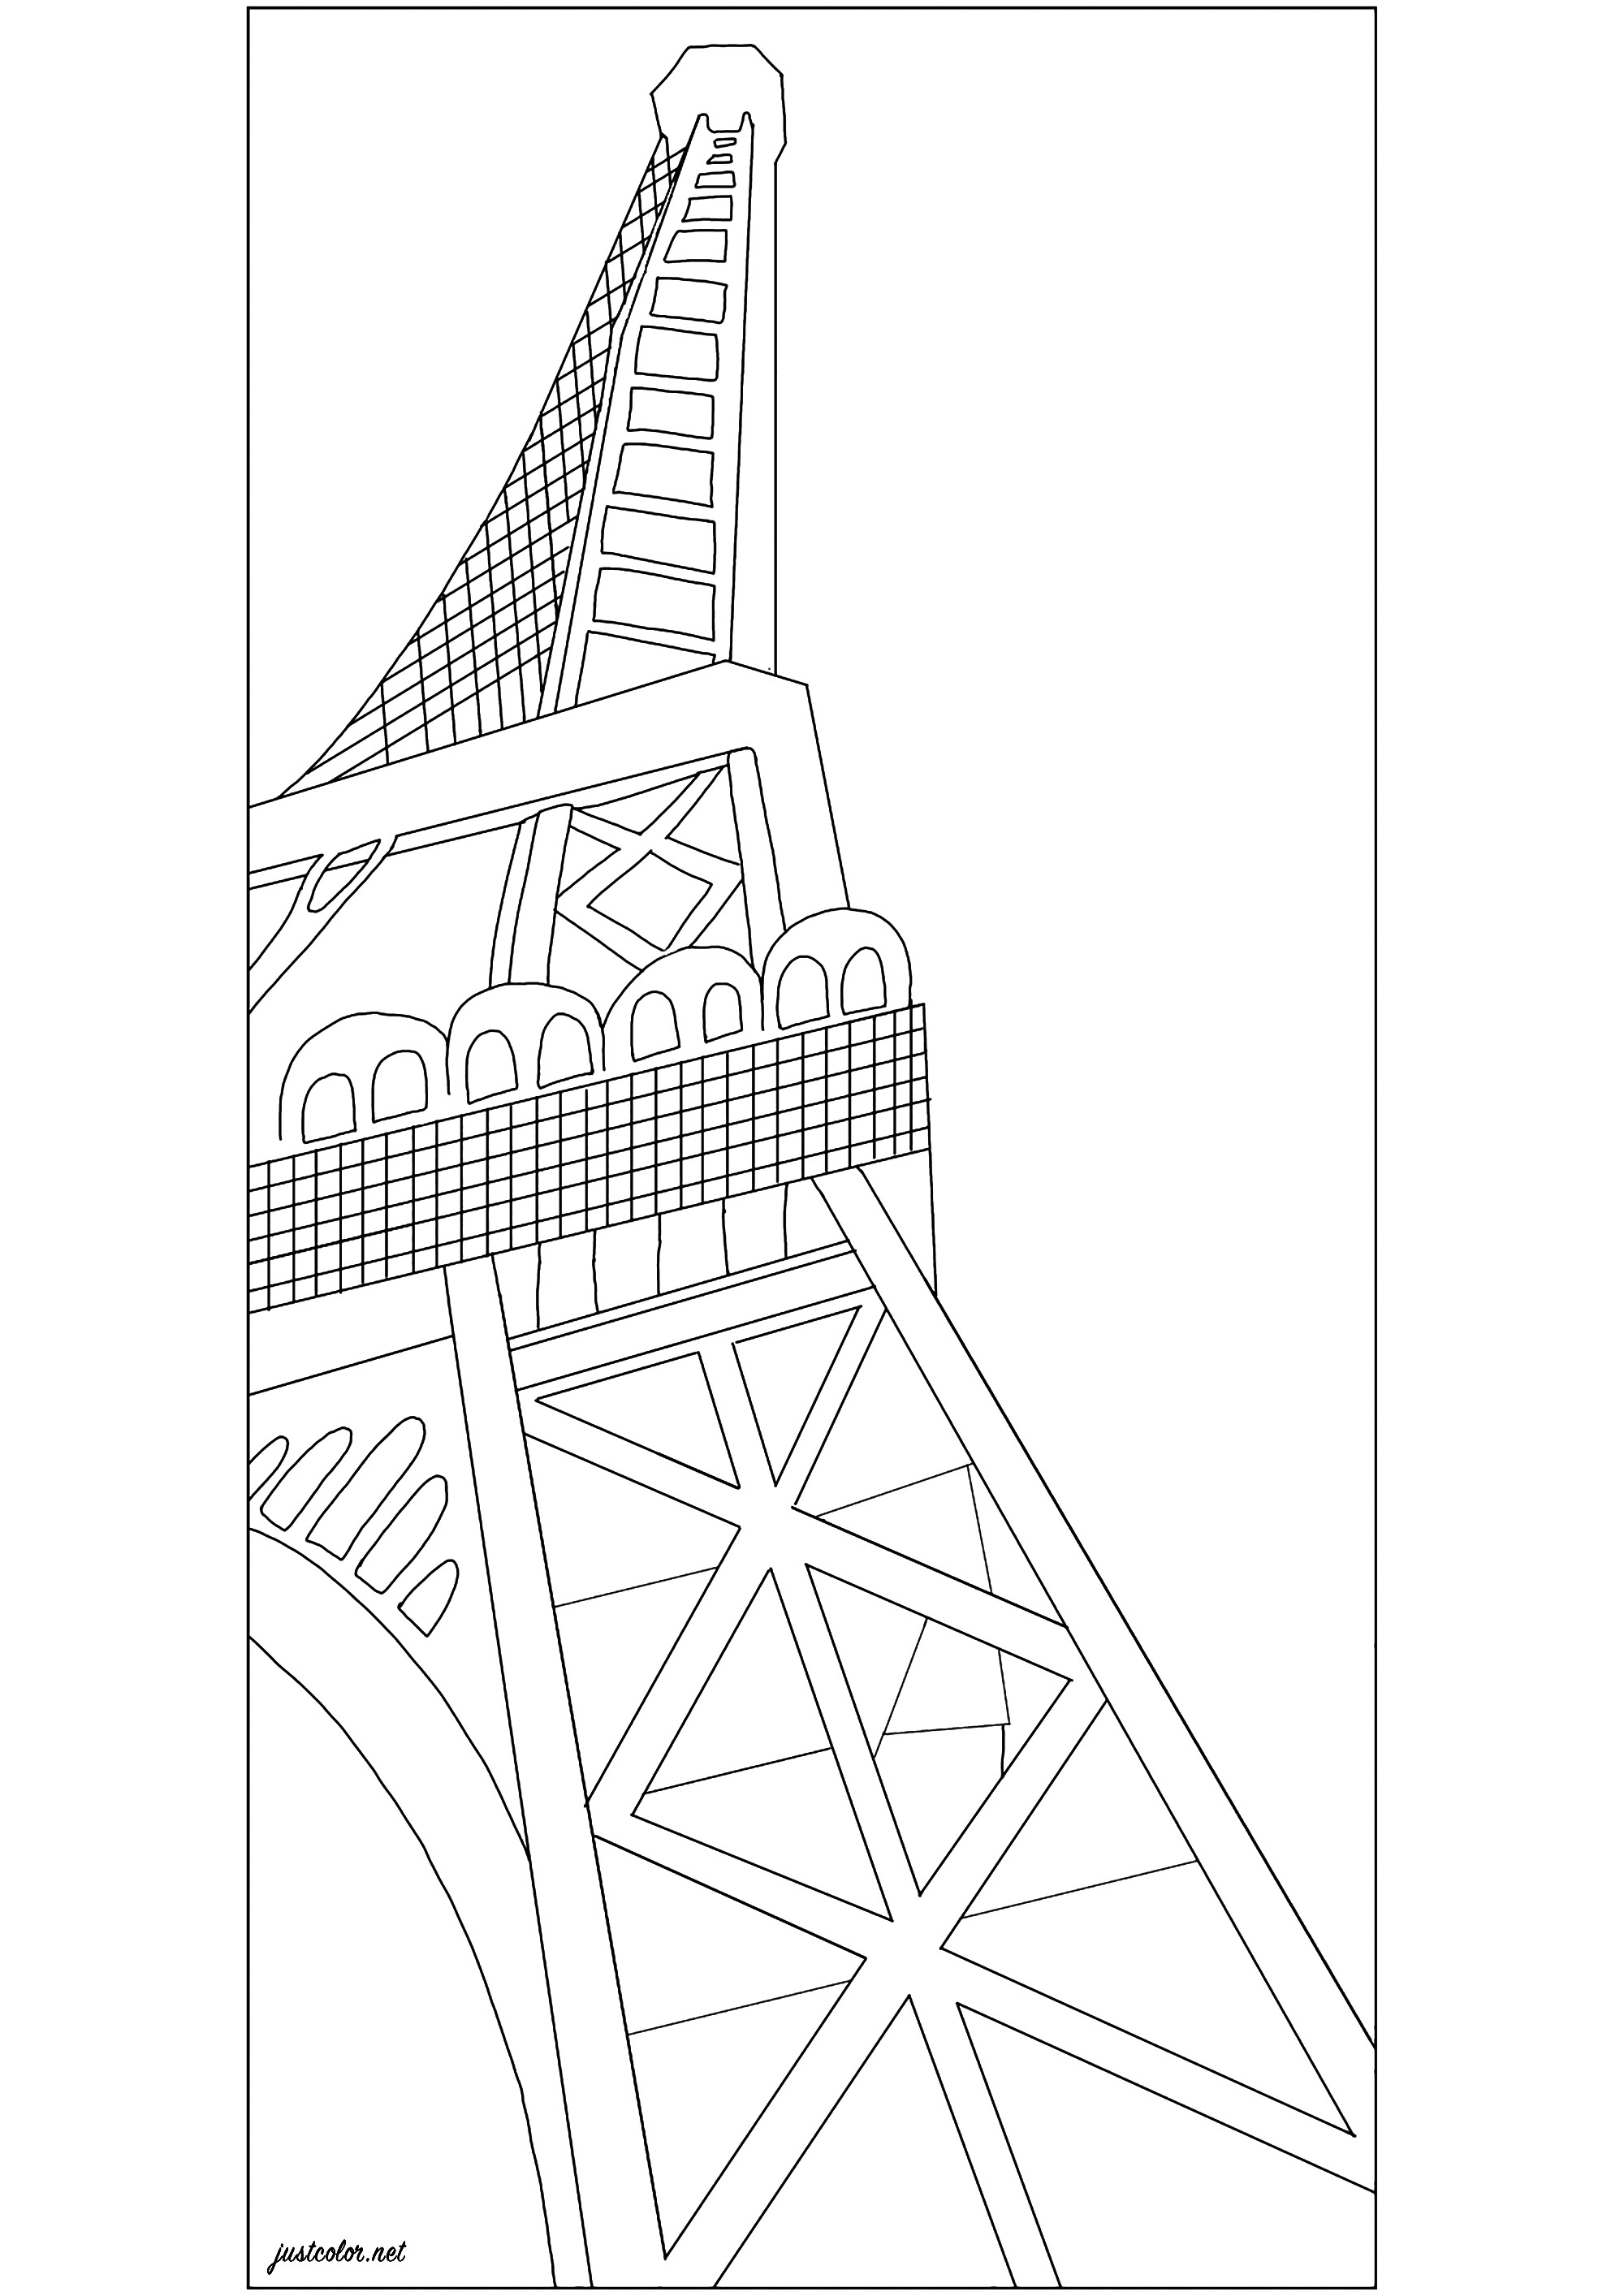 Coloriage créé à partir de 'La Tour Eiffel' (1926) par Robert Delaunay. La Tour Eiffel construite par Gustave Eiffel en 1889 est devenue un symbole de modernité qui a fasciné le peintre Robert Delaunay. Après l'avoir décomposée dans une série cubiste majeure au début des années 1910, l'artiste la glorifie en utilisant des couleurs flamboyantes et un effet puissant de vue d'en bas, souvent adopté par les photographes de l'époque, Artiste : Jade F